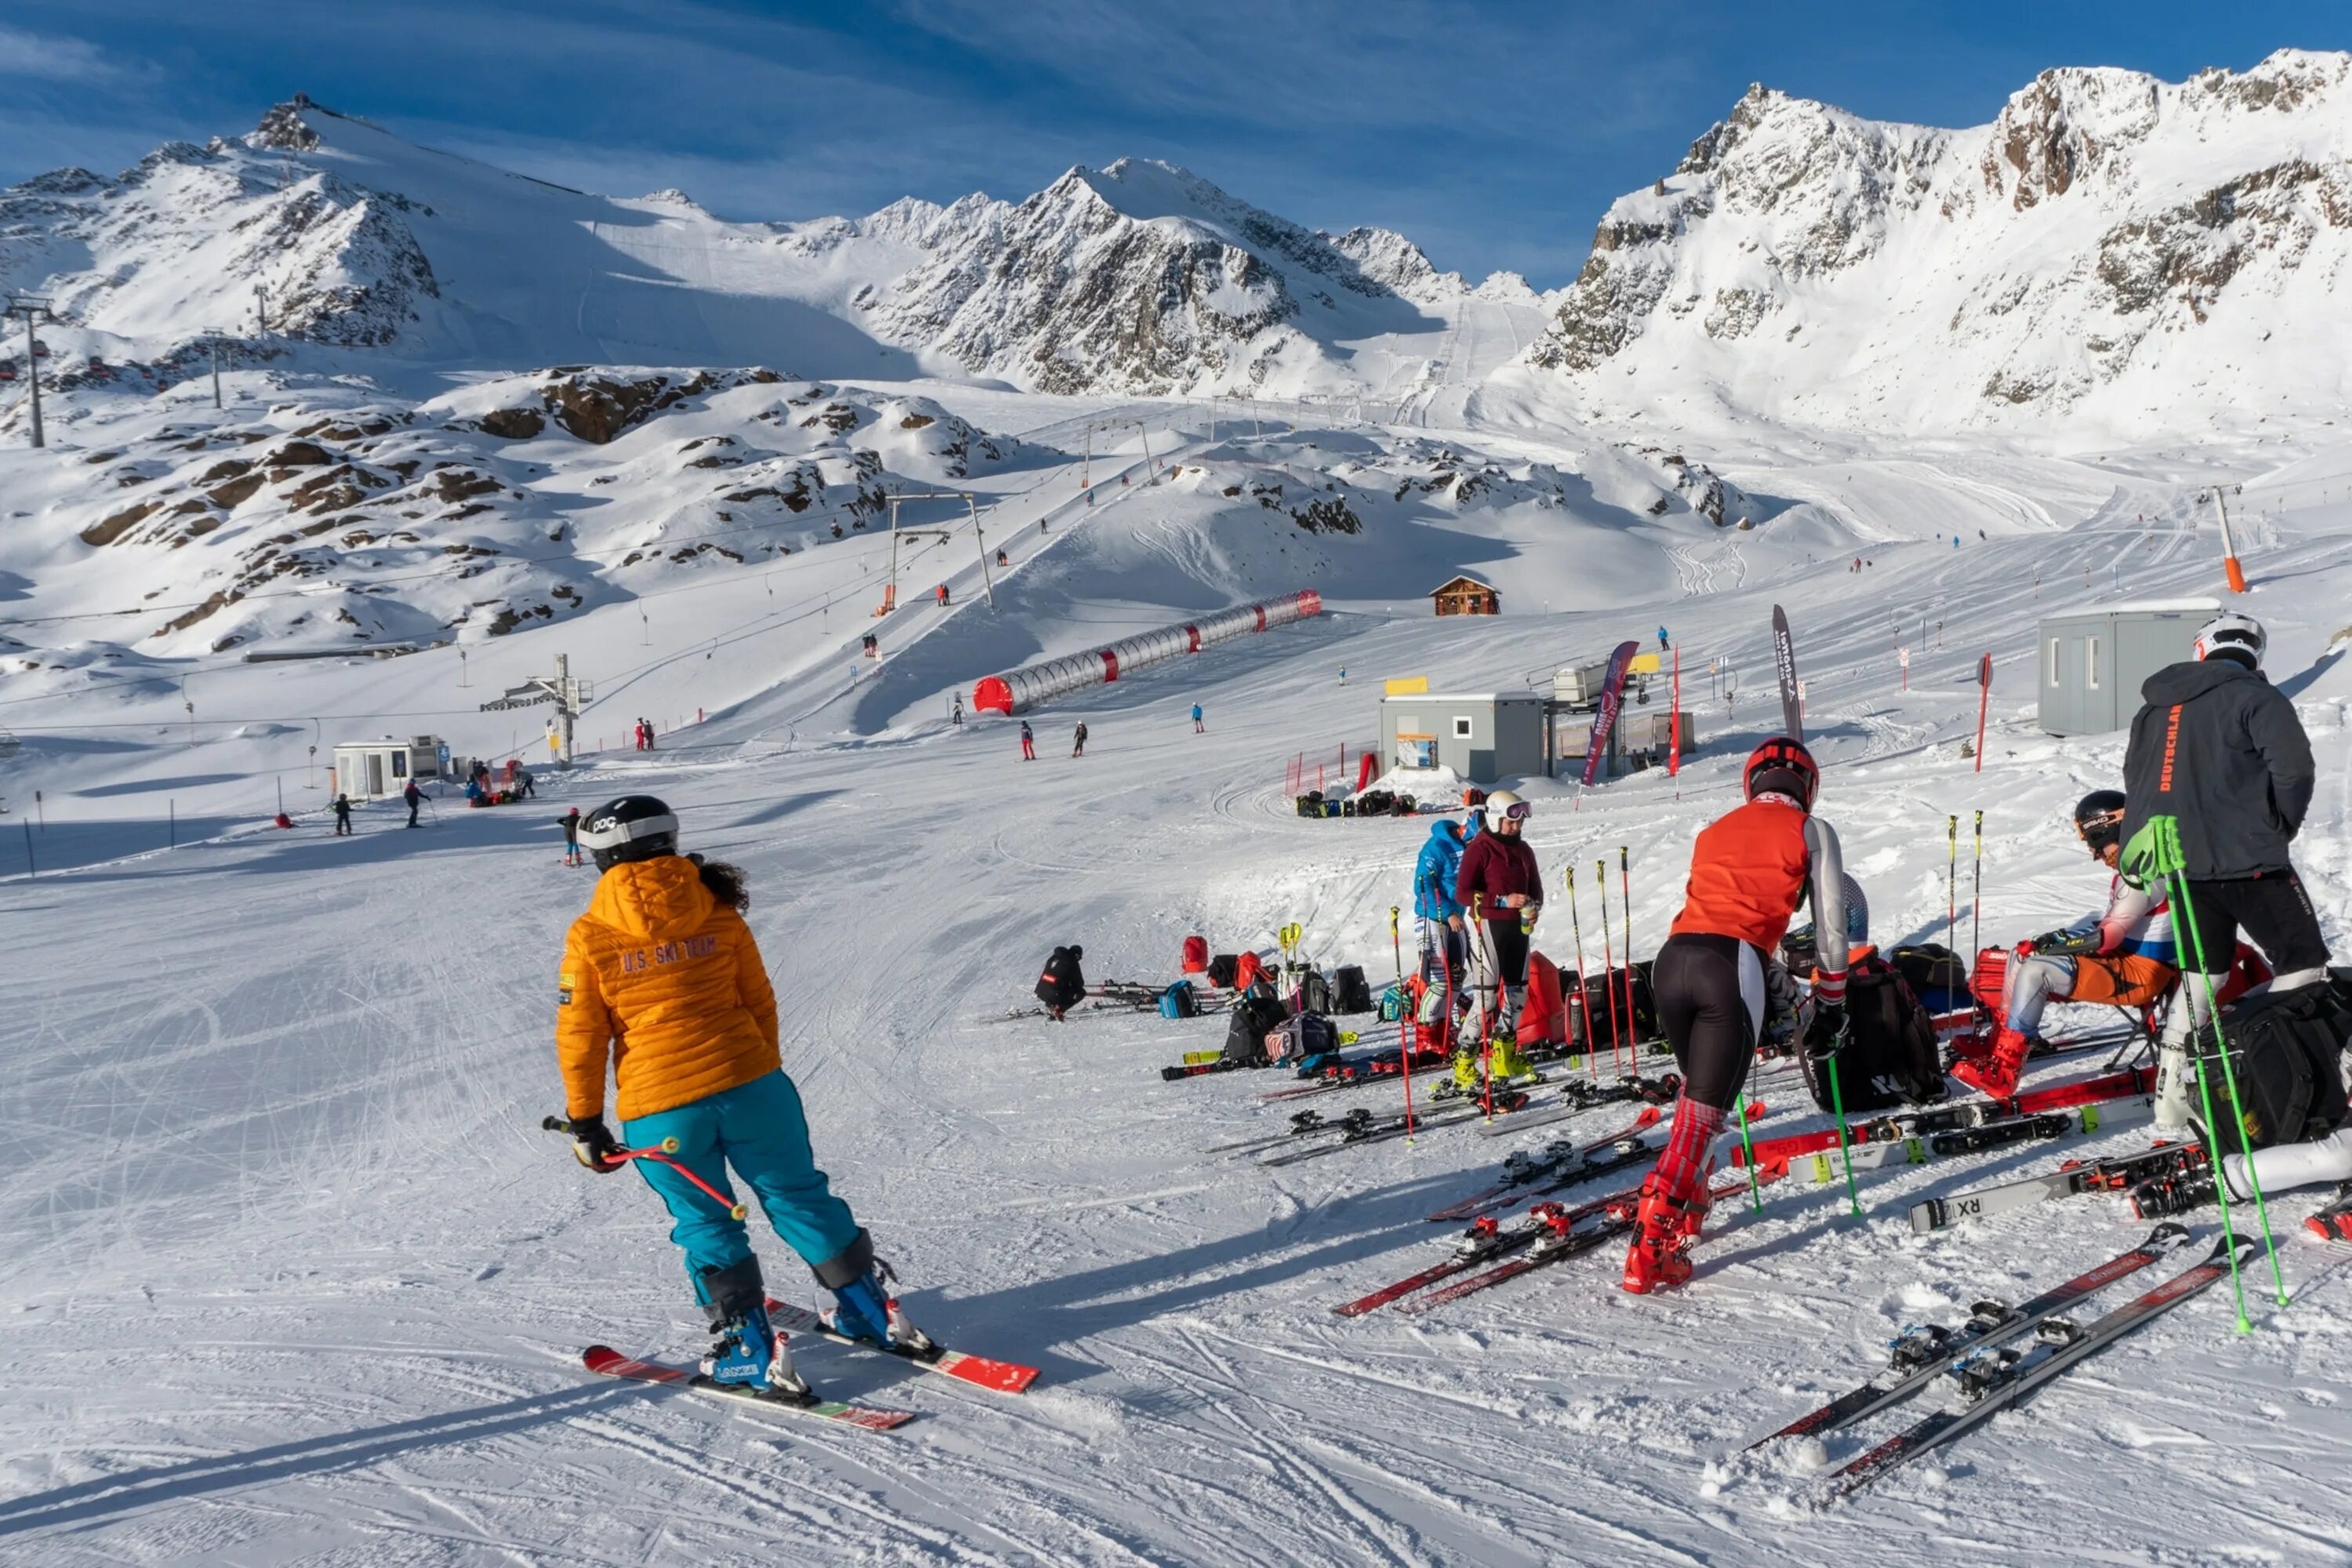 Первый горнолыжный курорт. Курорт Ишгль Австрия. Питцталь горнолыжный курорт. Альпы лыжи. Португалия горнолыжные курорты.